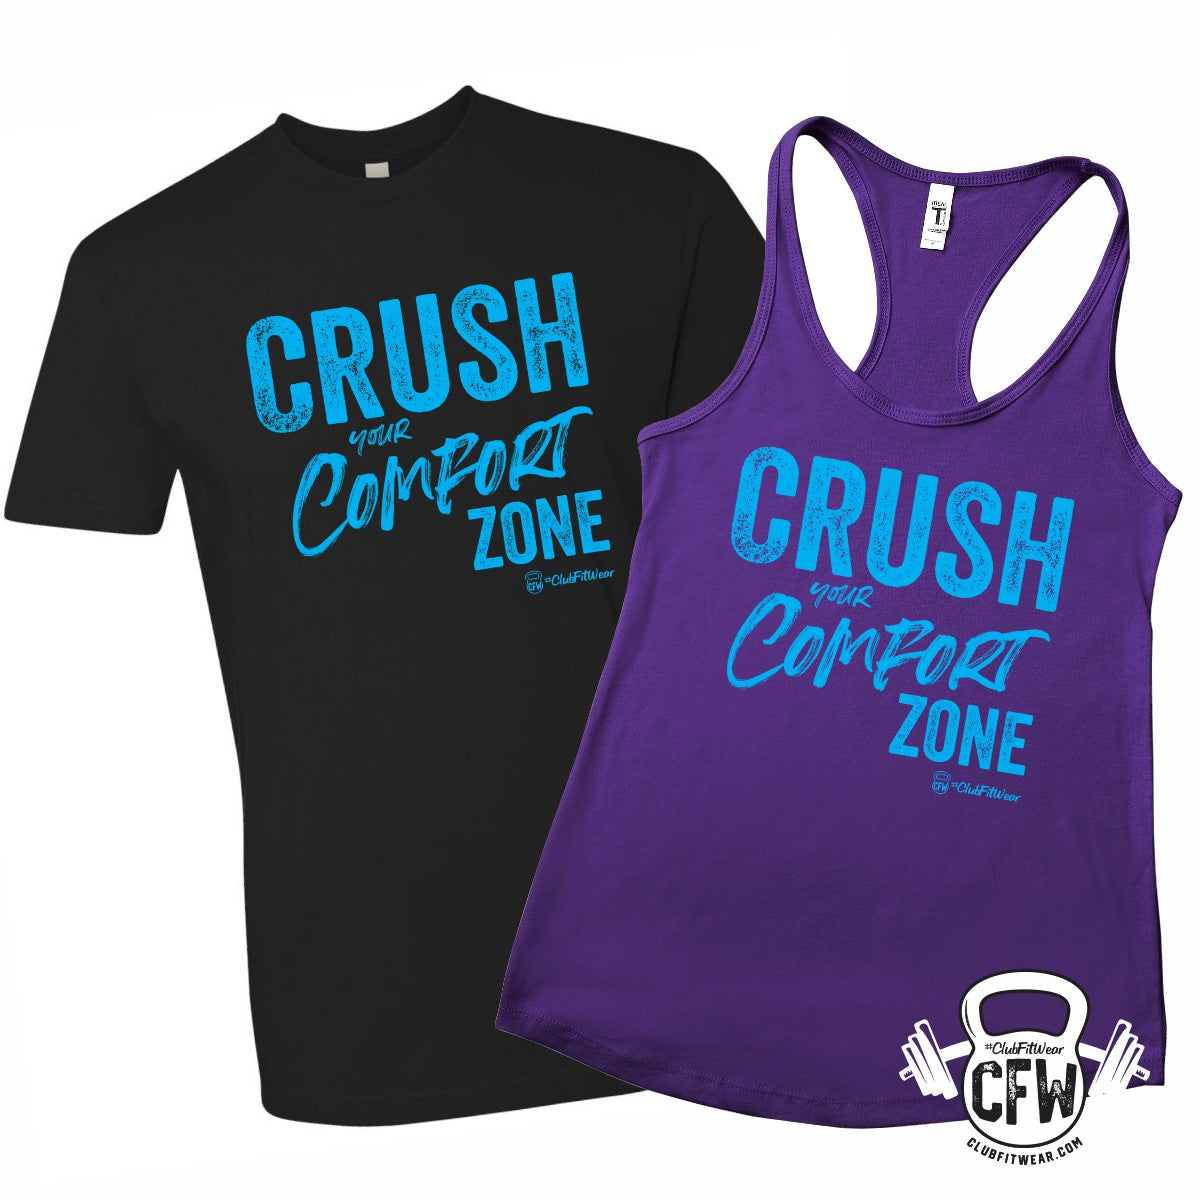 Crush your Comfort Zone